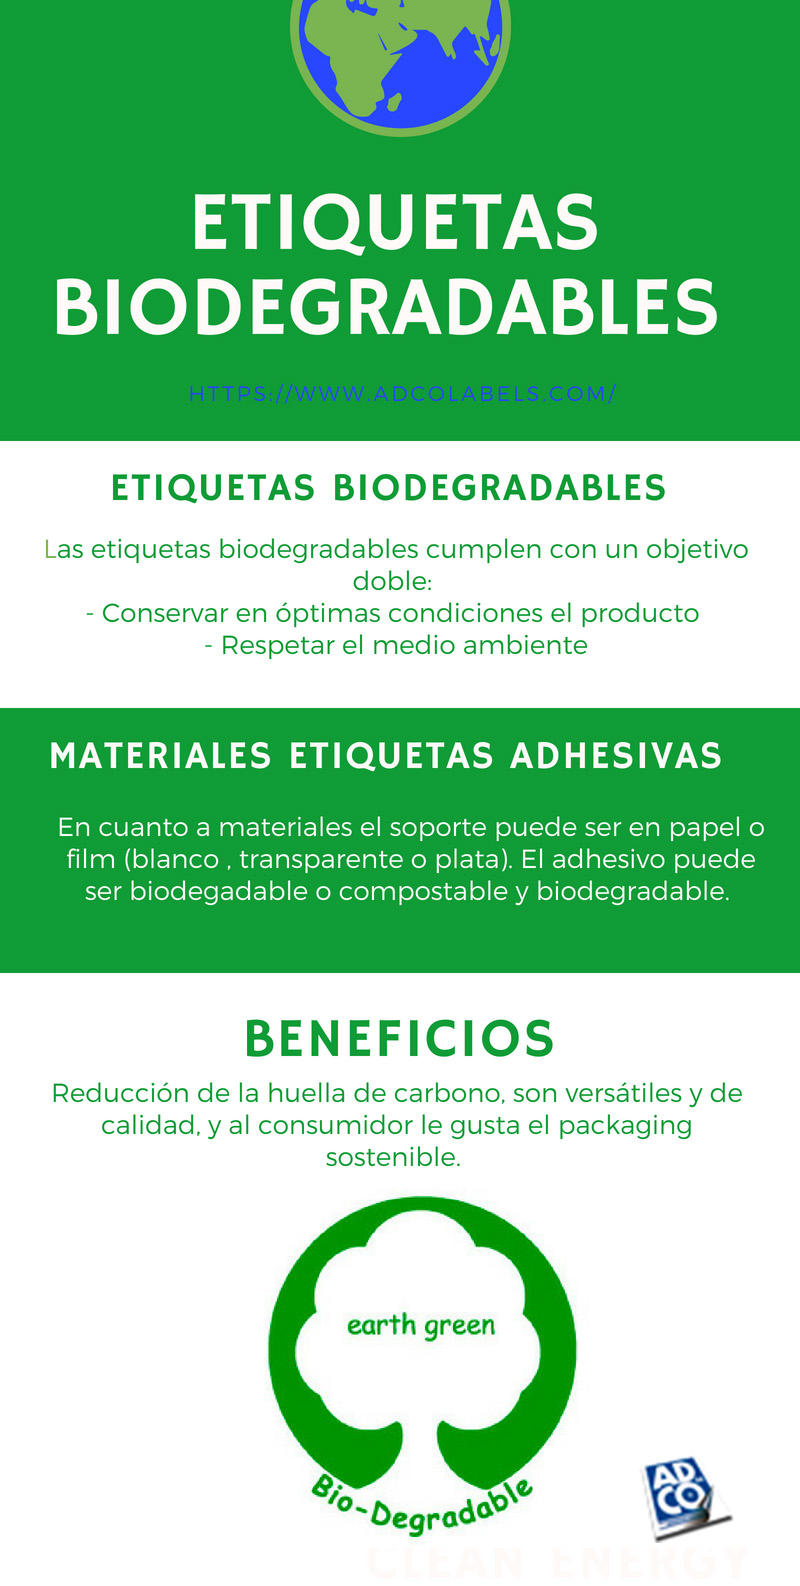 infografia etiquetas biodegradables